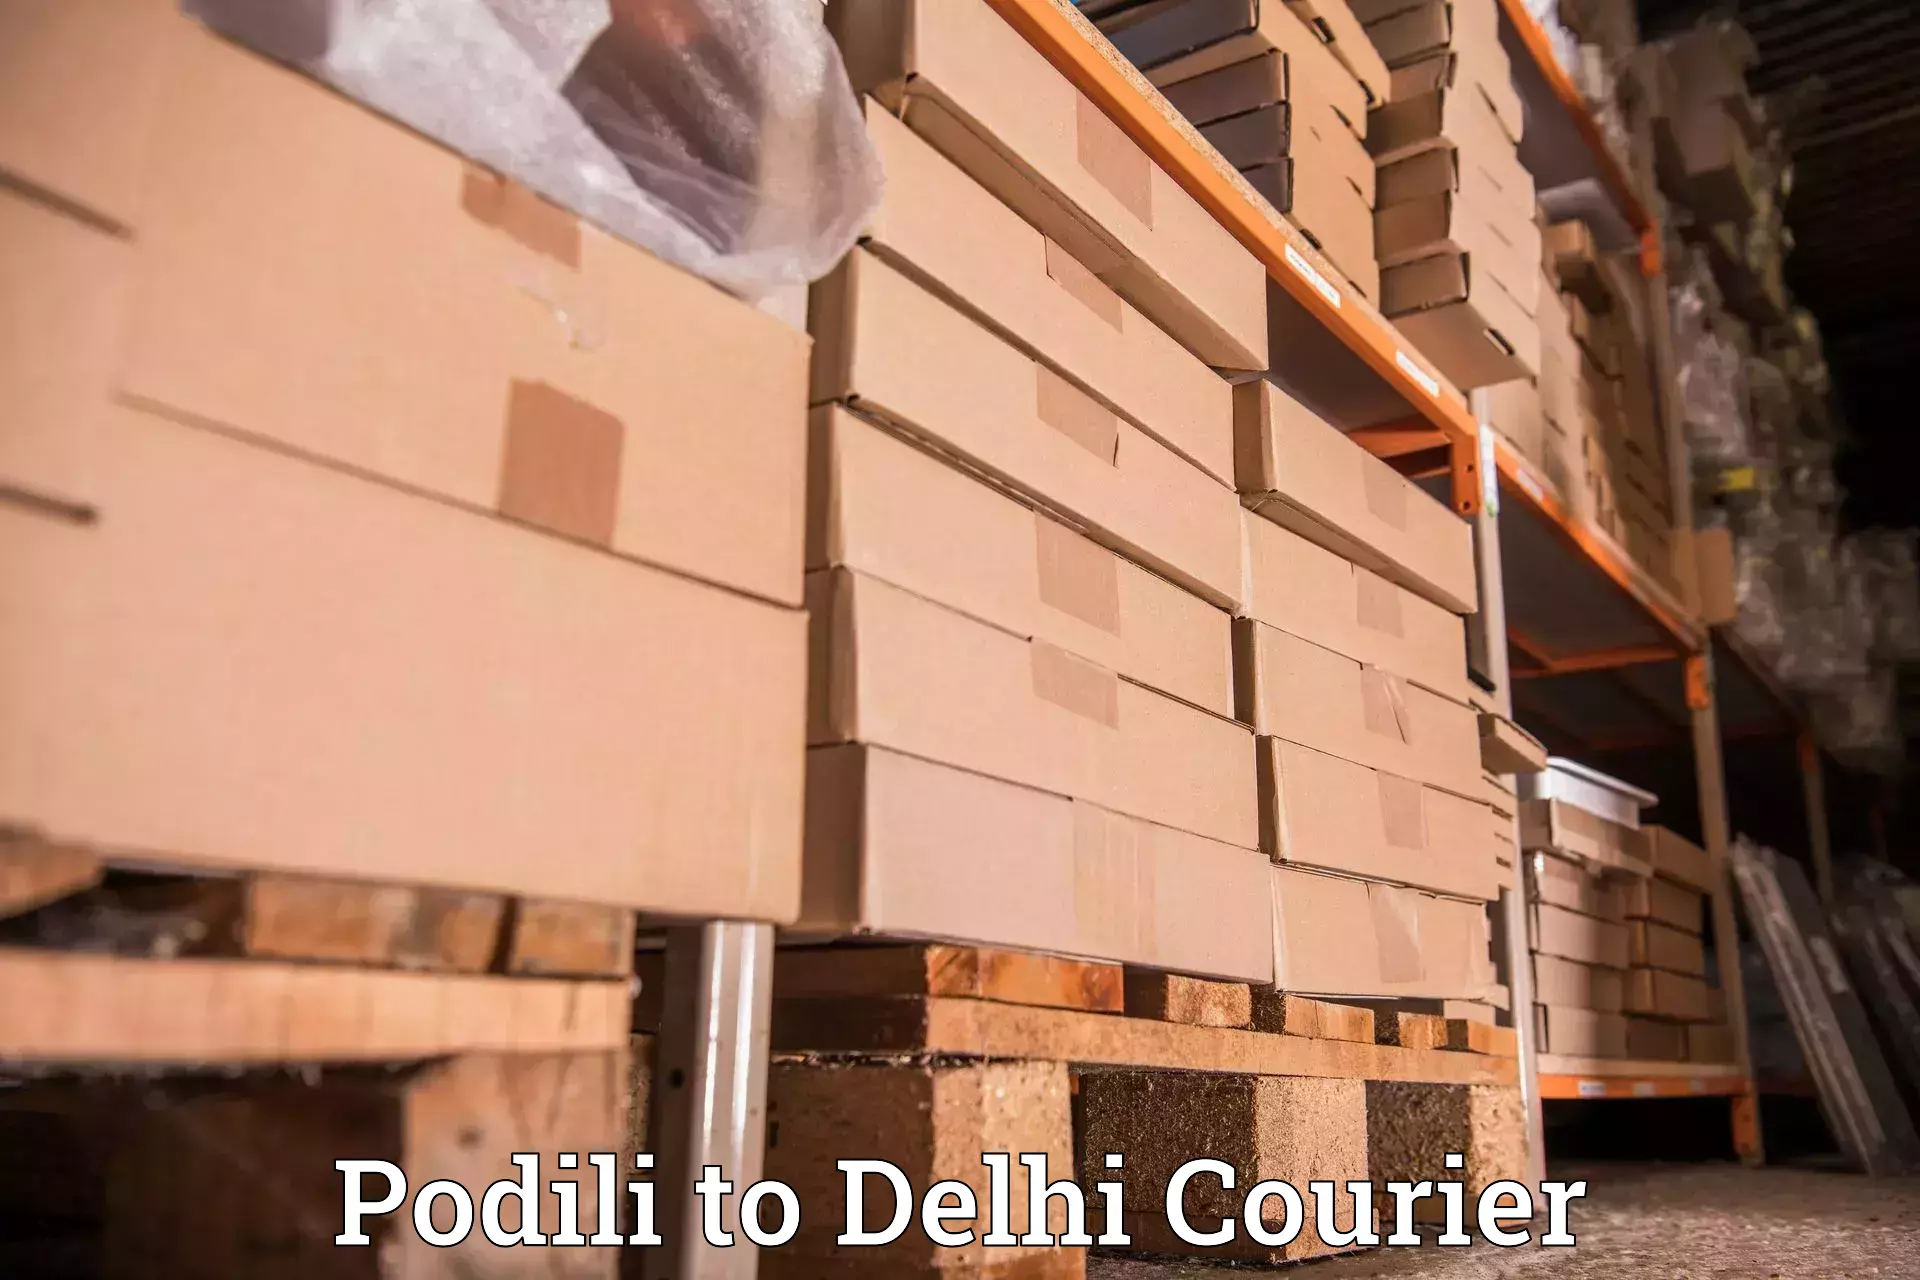 24/7 courier service Podili to East Delhi